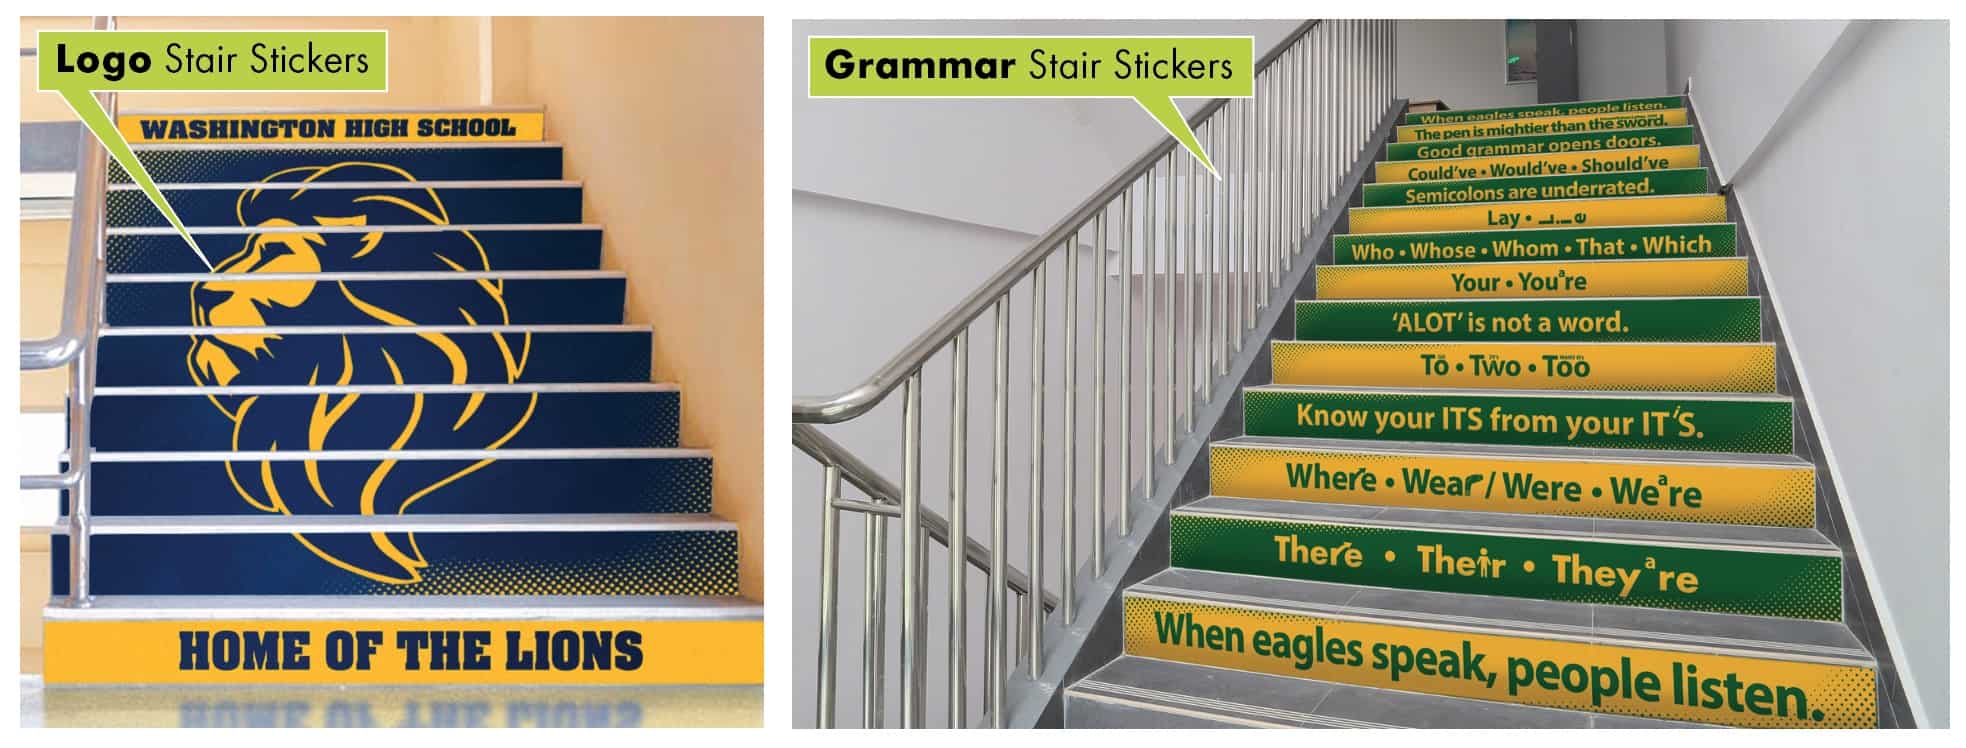 Stair Stickers Grammar